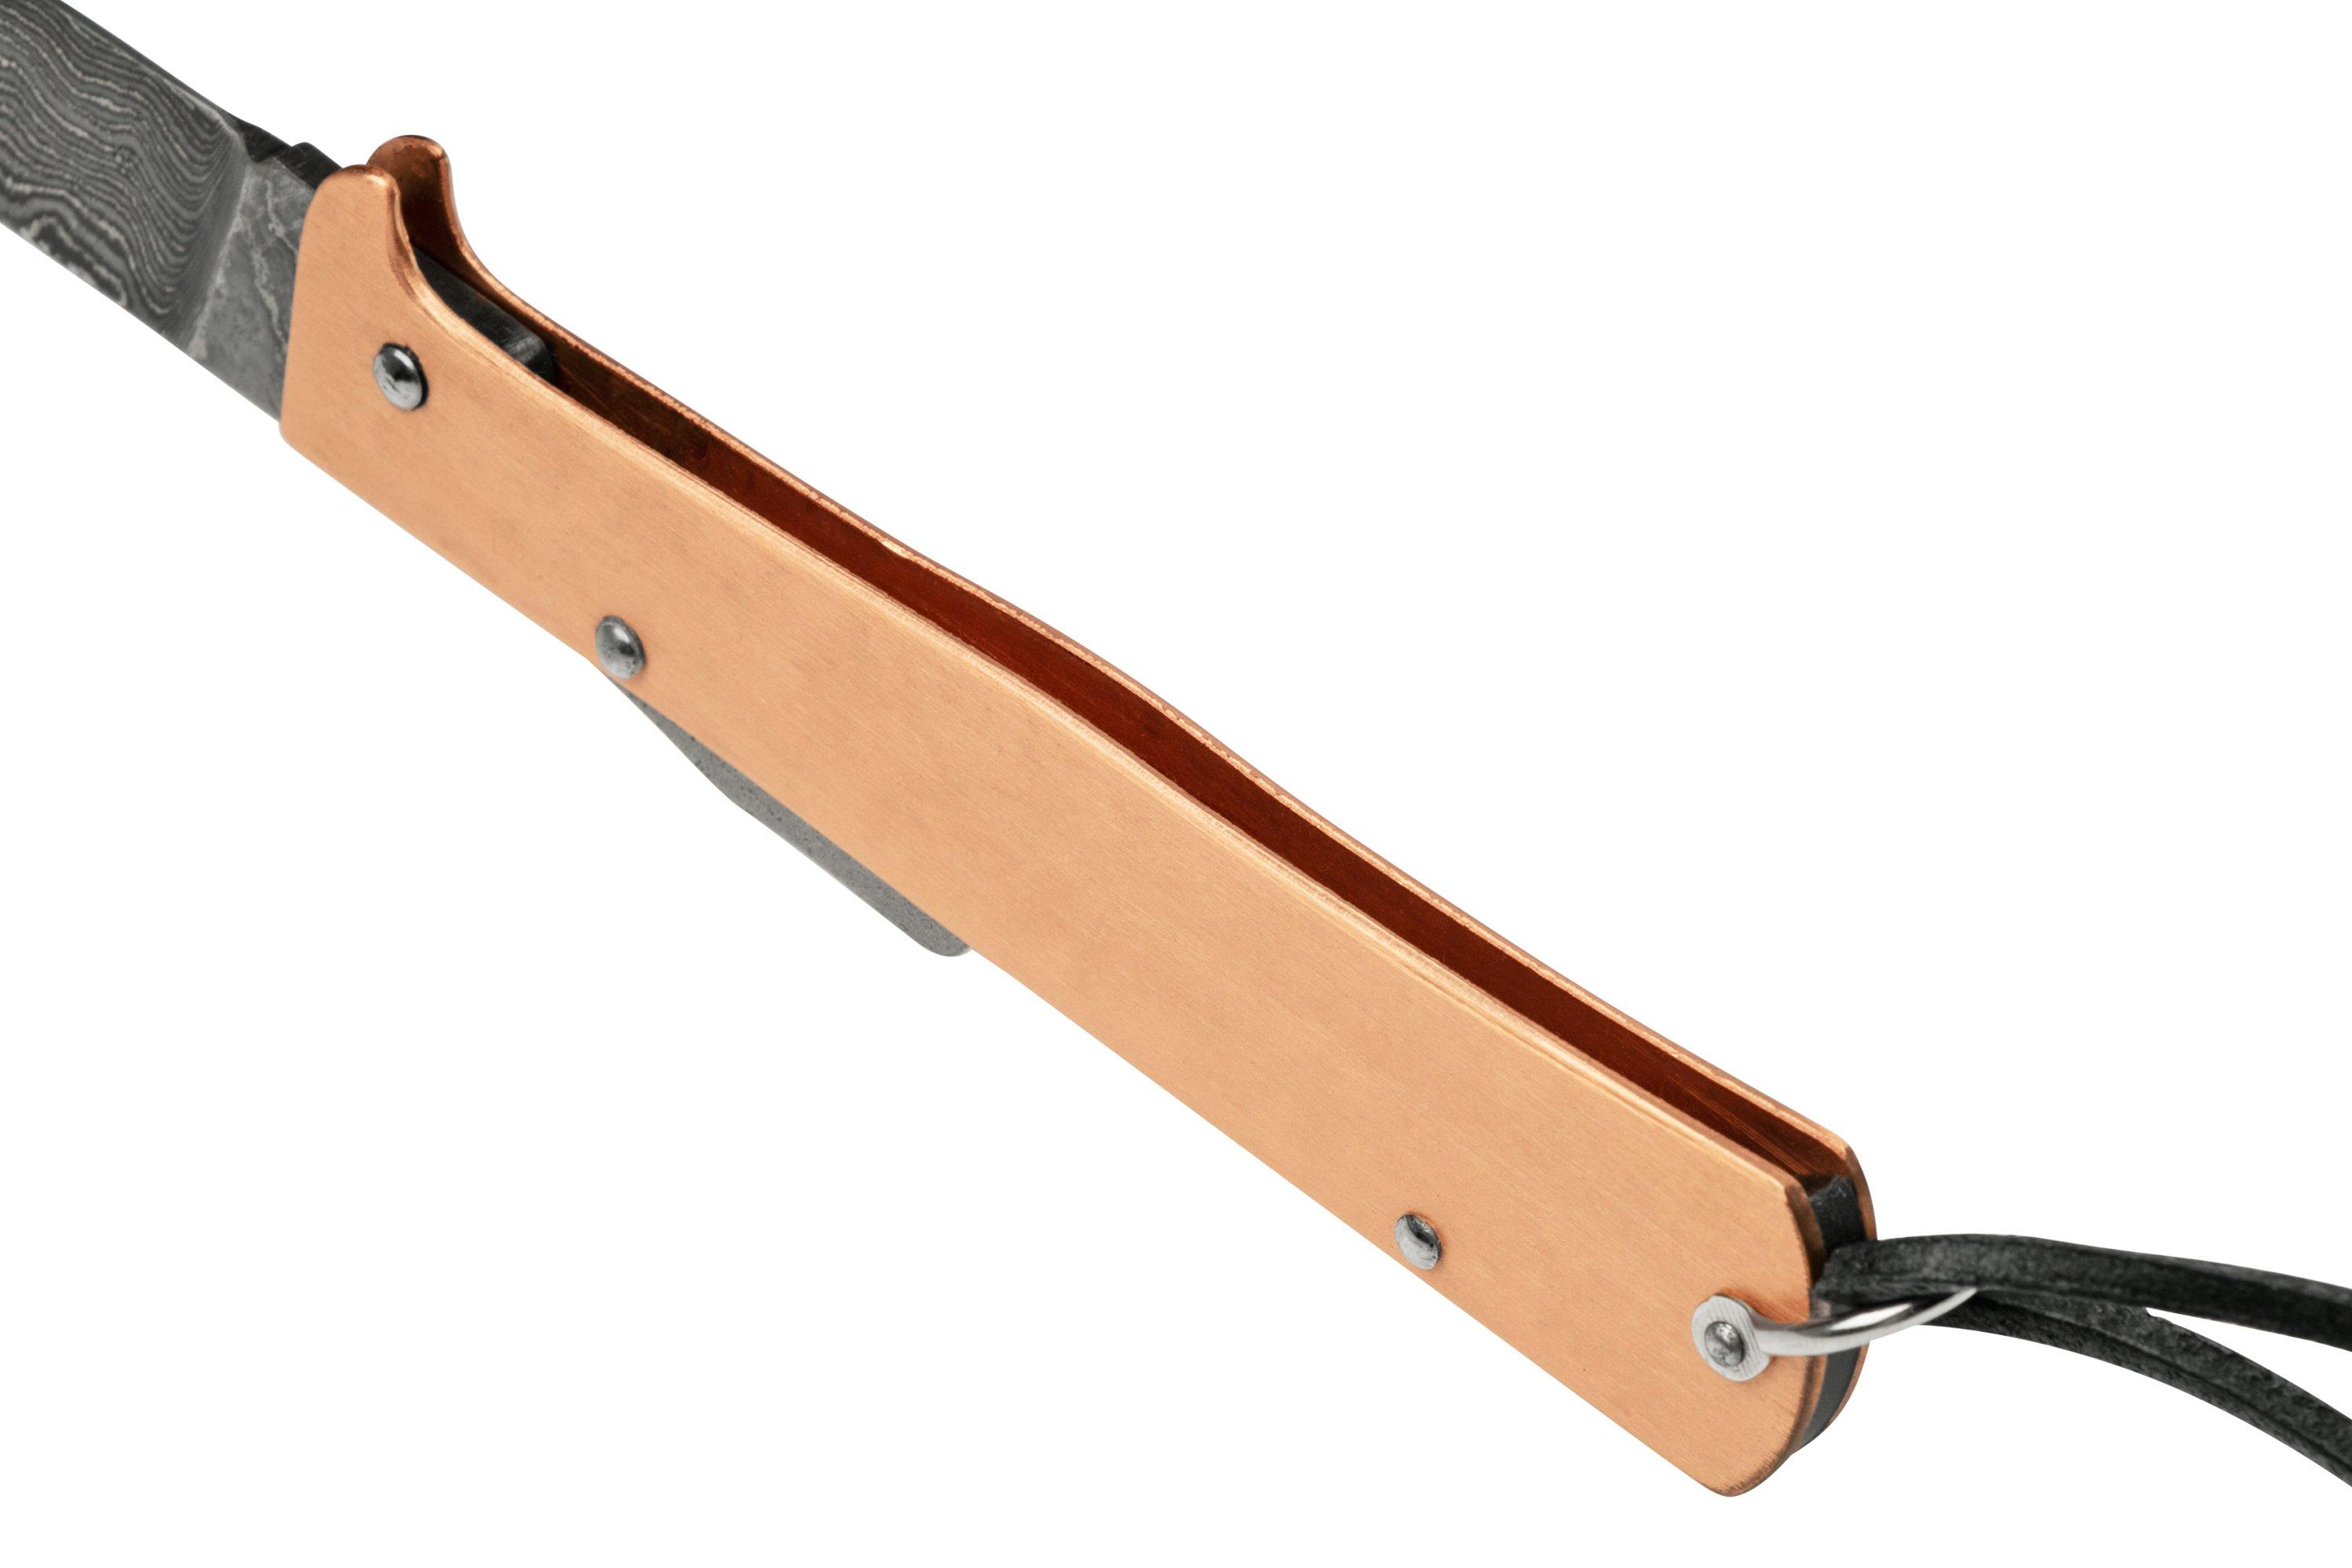 Otter-Messer Mercator Clip Copper 3.5 Stainless Blade